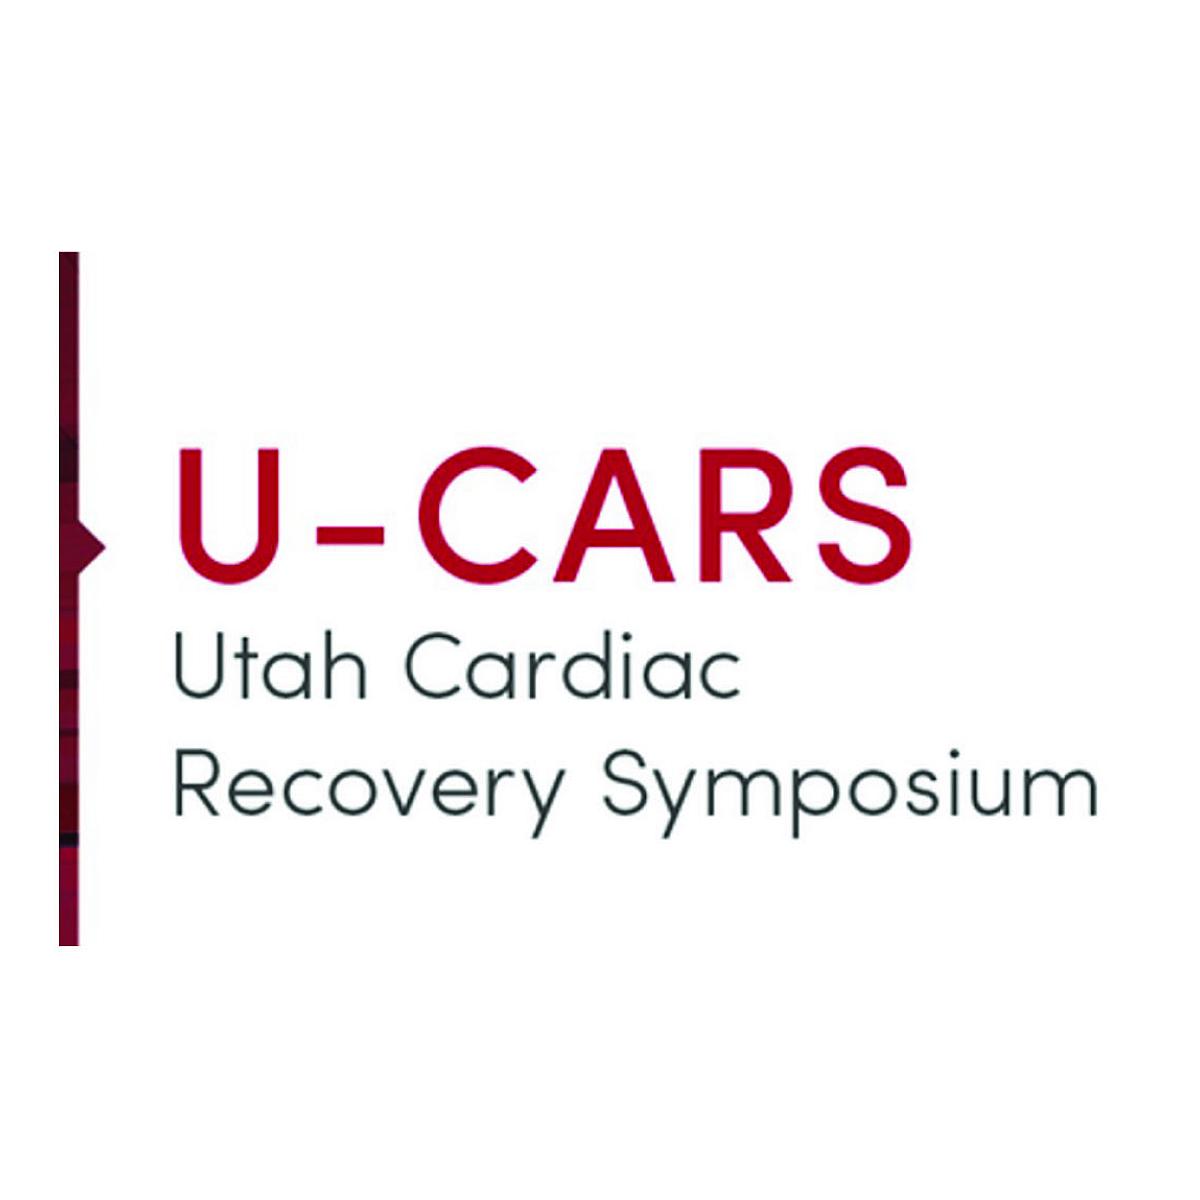 U-CARS logo